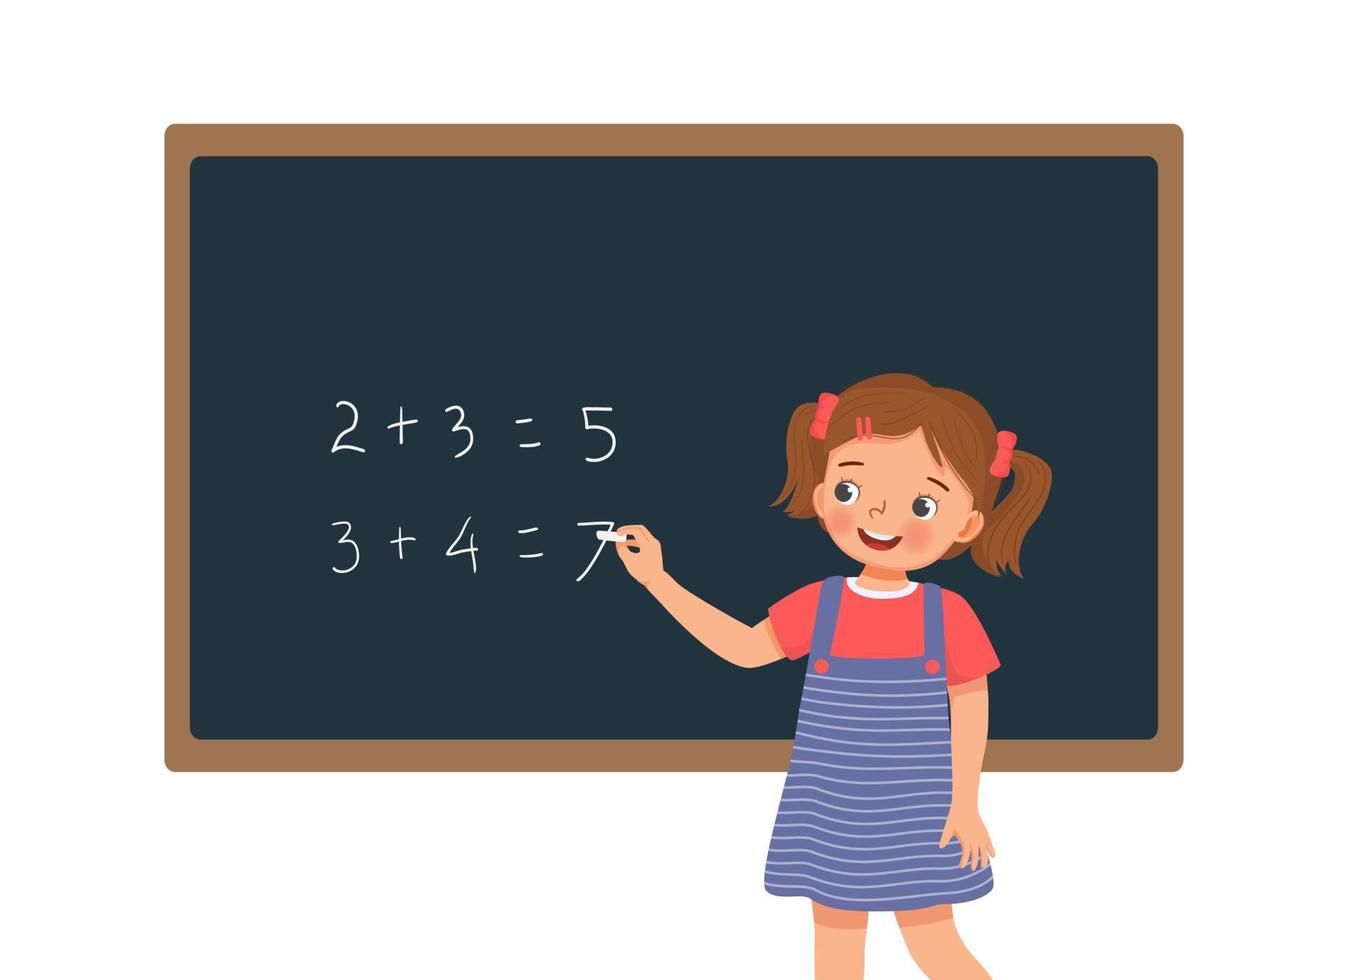 söt liten flicka student skriver med krita matematisk ekvation lösning på tavlan framför klassen vektor